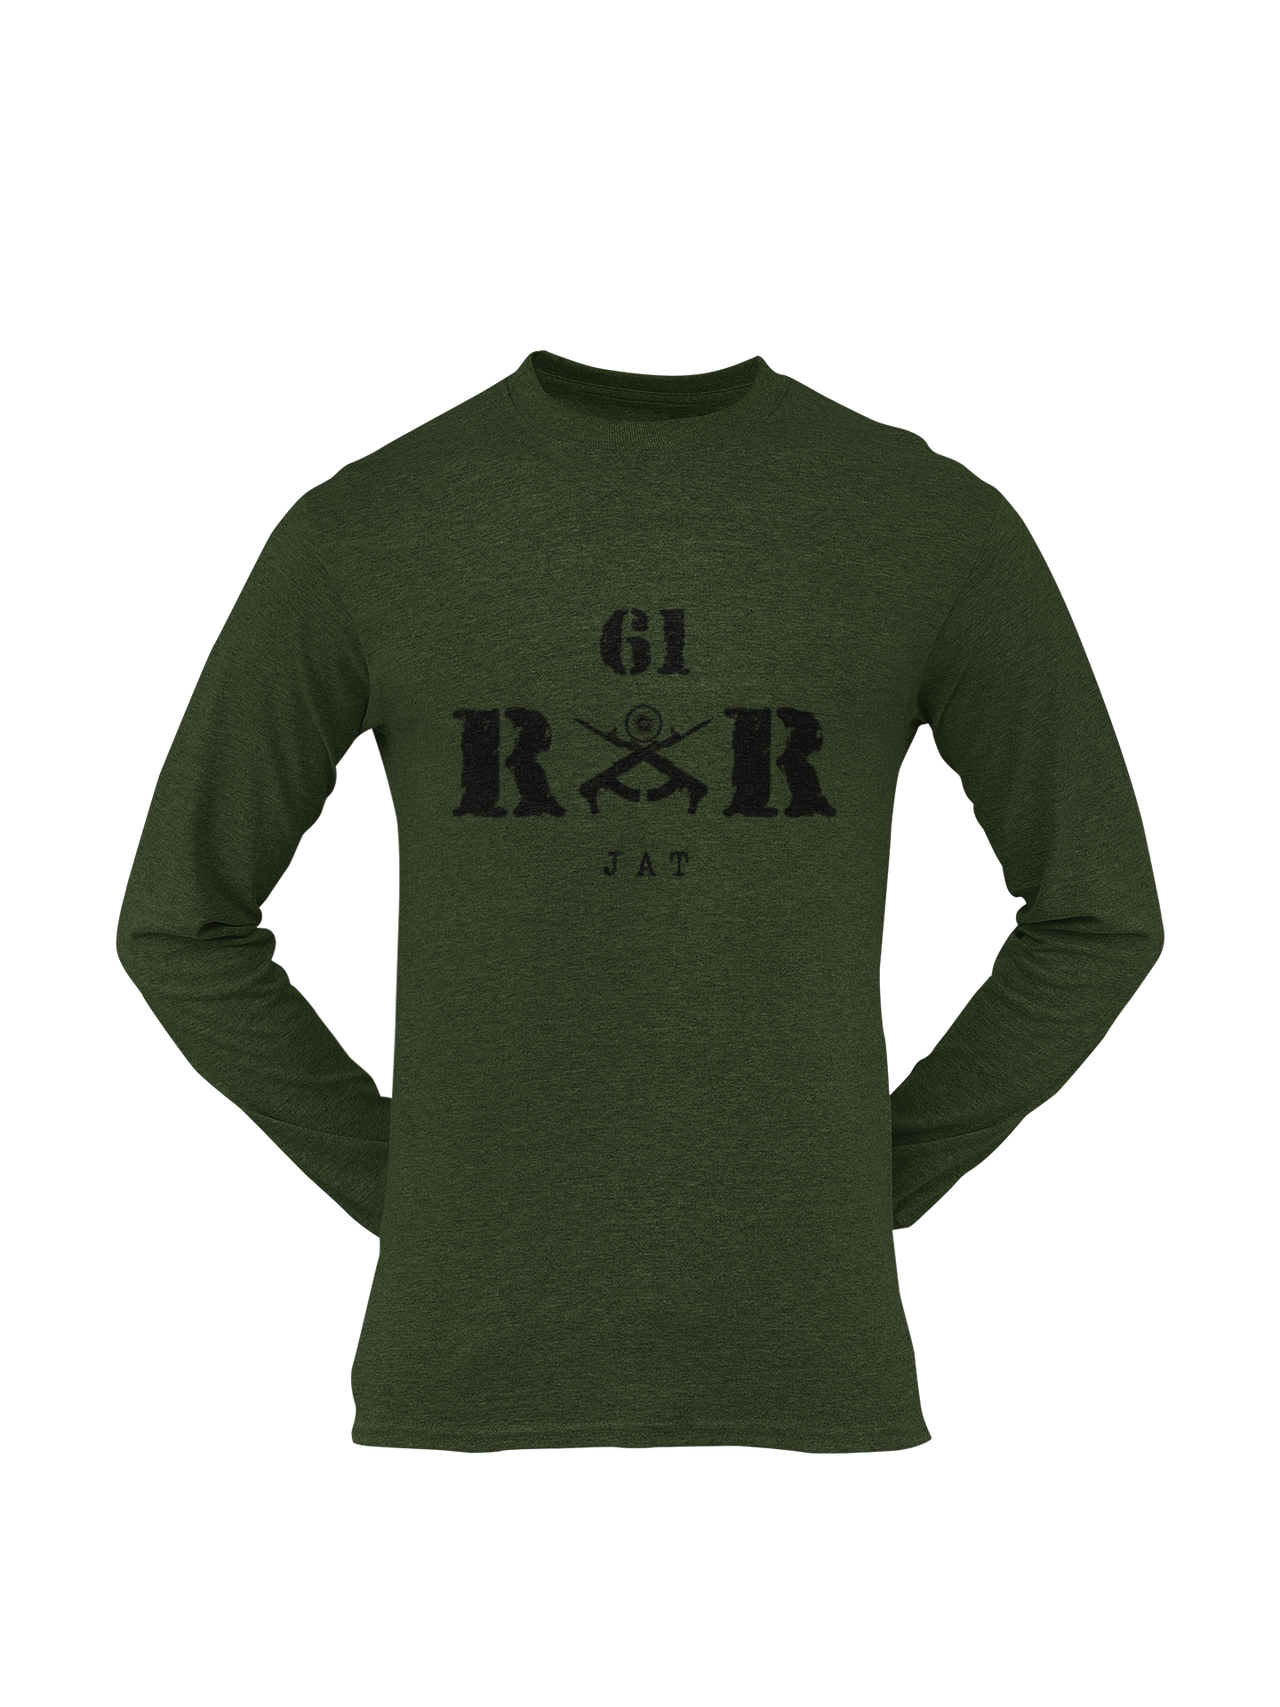 Rashtriya Rifles T-shirt - 61 RR Jat (Men)